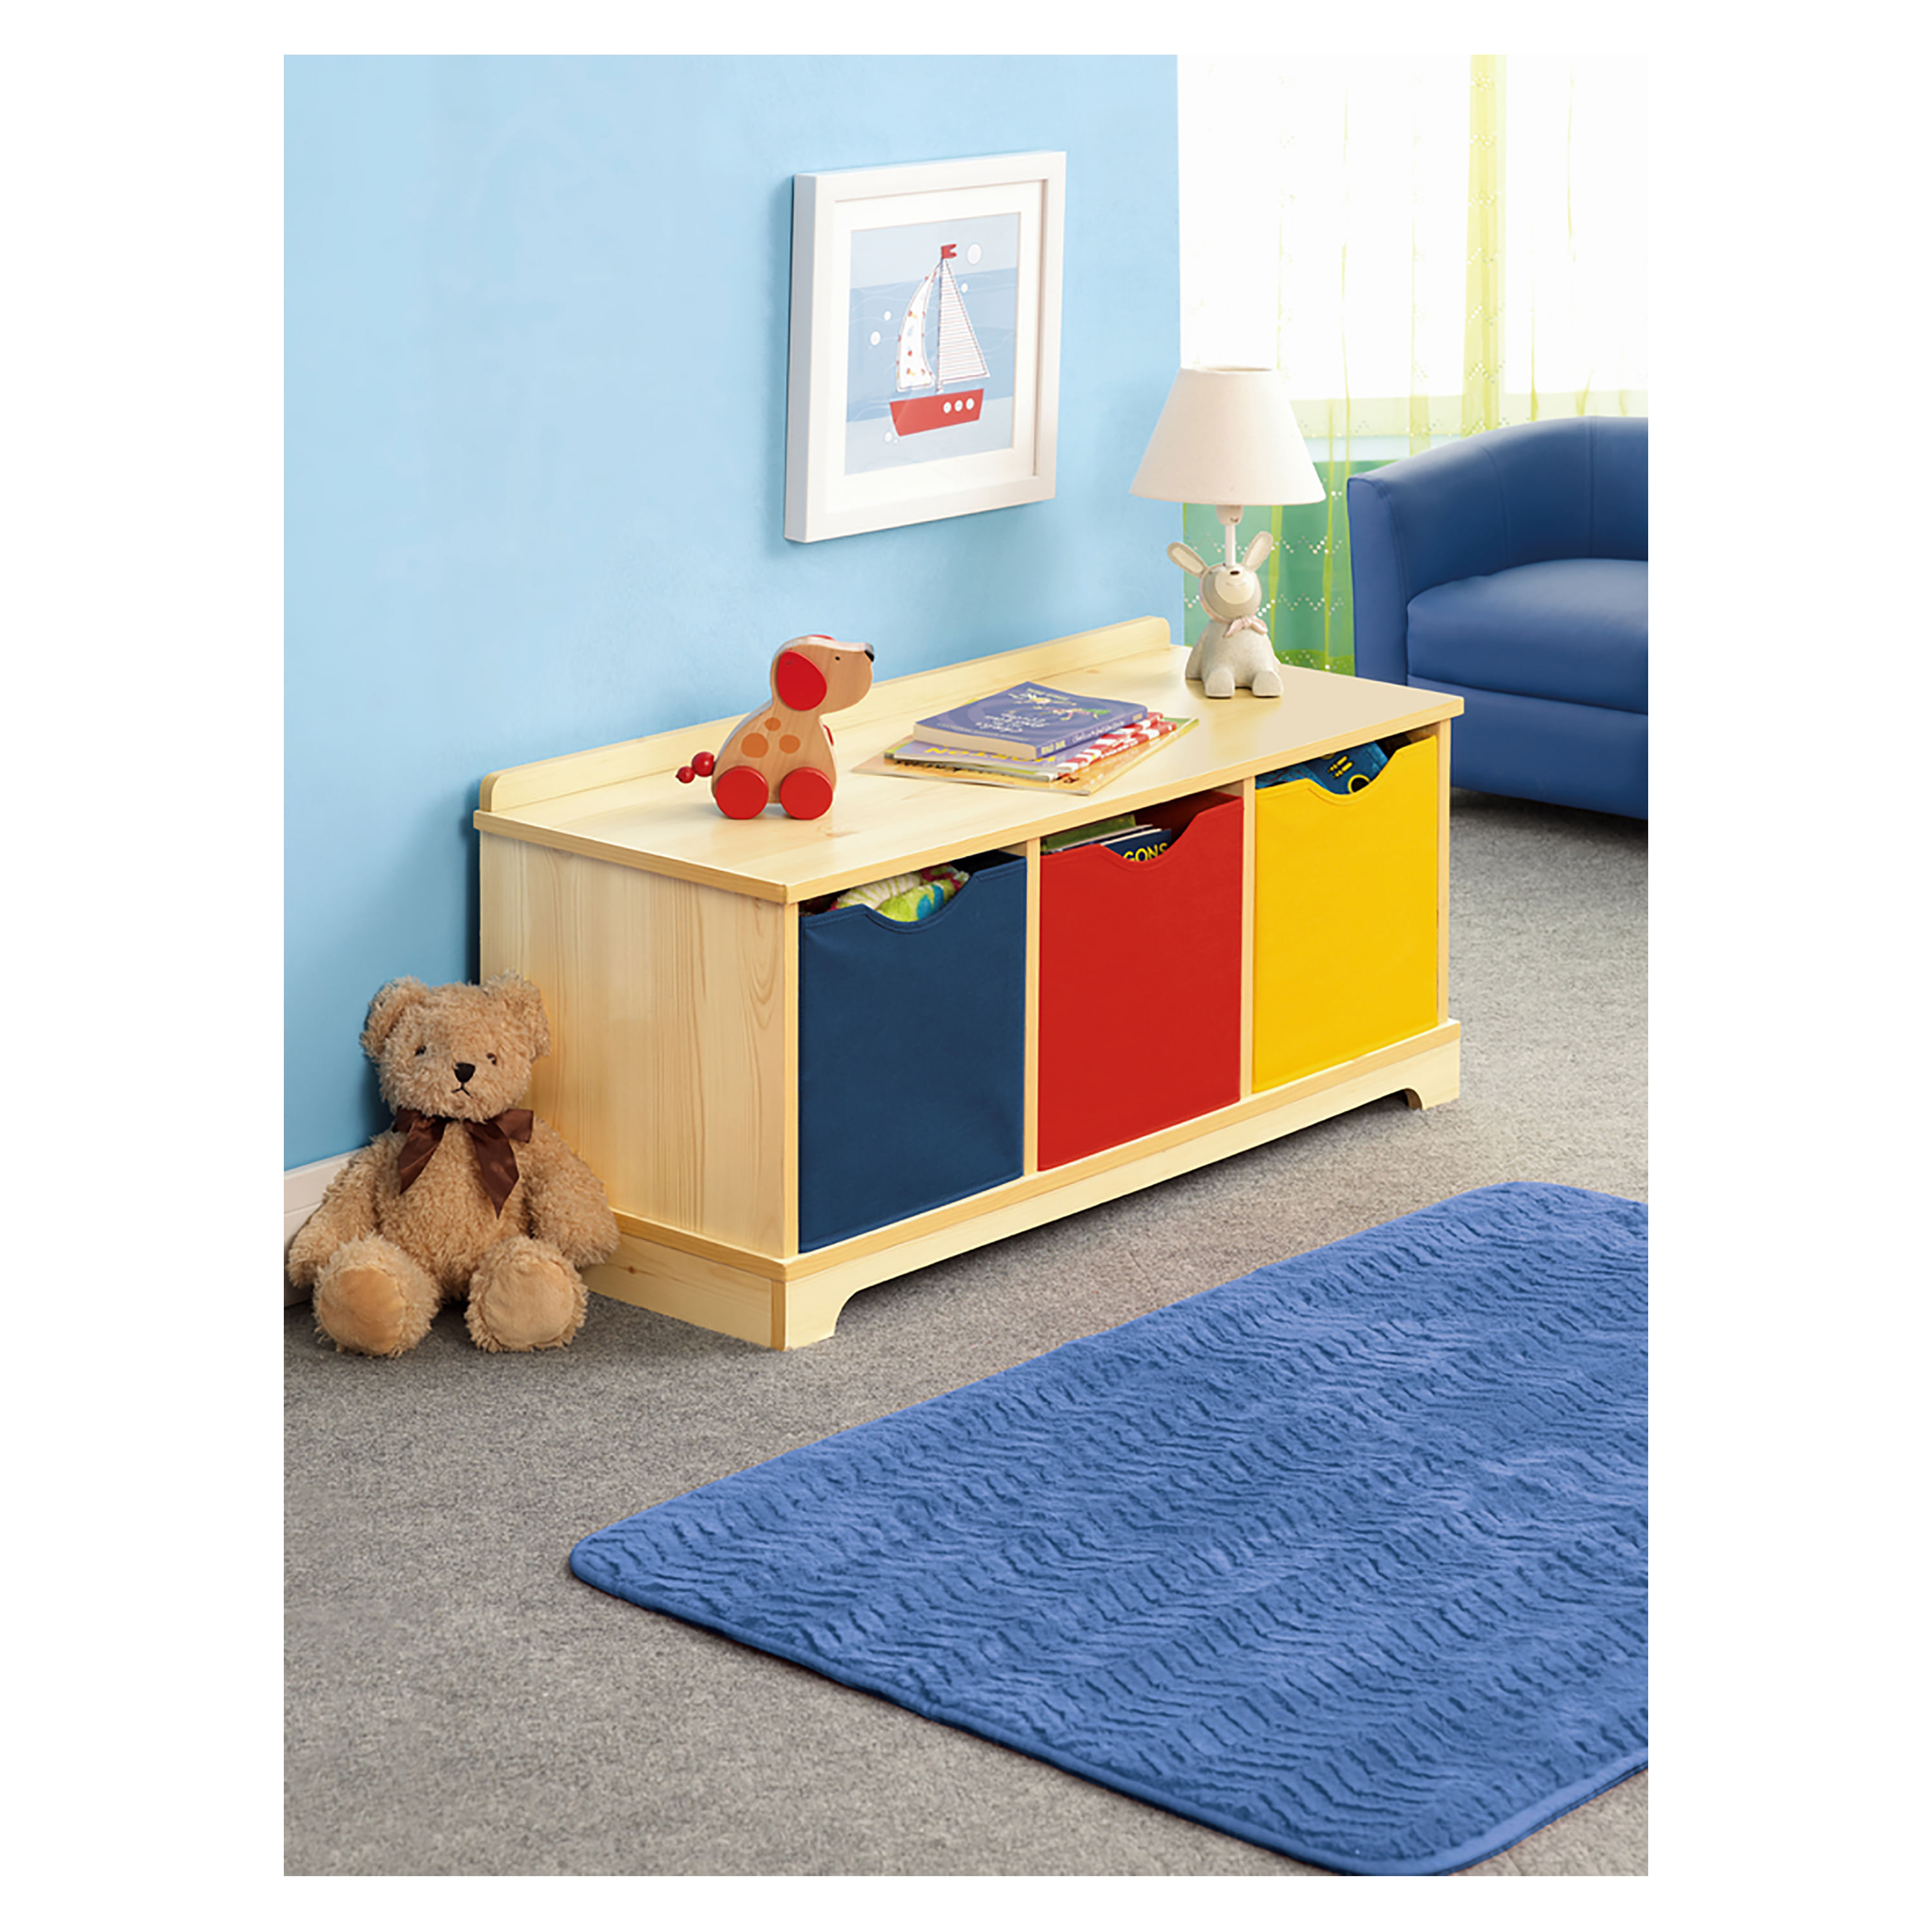 CREATIVO organizador de juguetes para niño \ niña varios colores,  contactanos - Muebles en melamina : puntualidad , garantia y buena  calidad